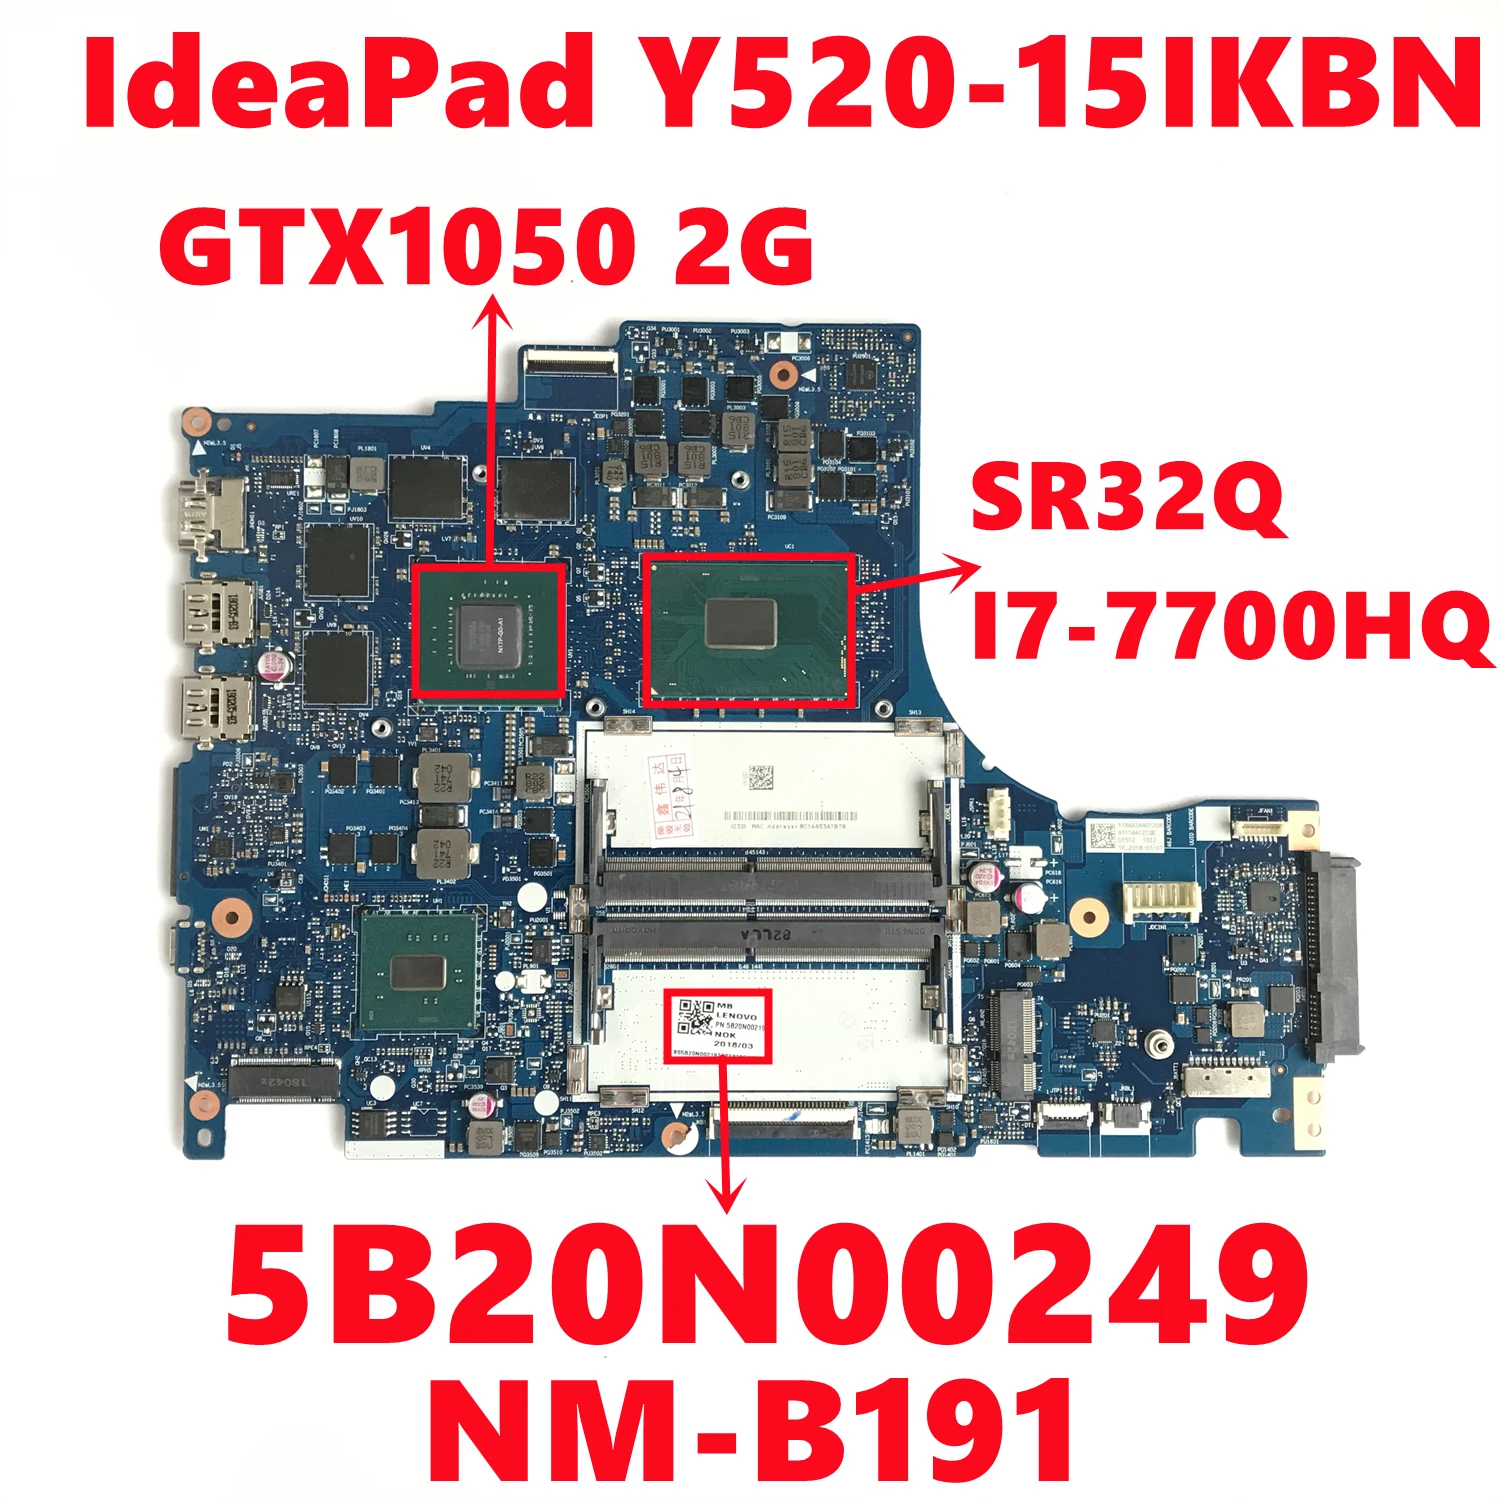 FRU; 5B20N00249 Matična ploča za Lenovo IdeaPad Y520-15IKBN Matična ploča laptopa DY512 NM-B191 s I7-7700HQ N17P-G0-A1 2 GB, 100% Test